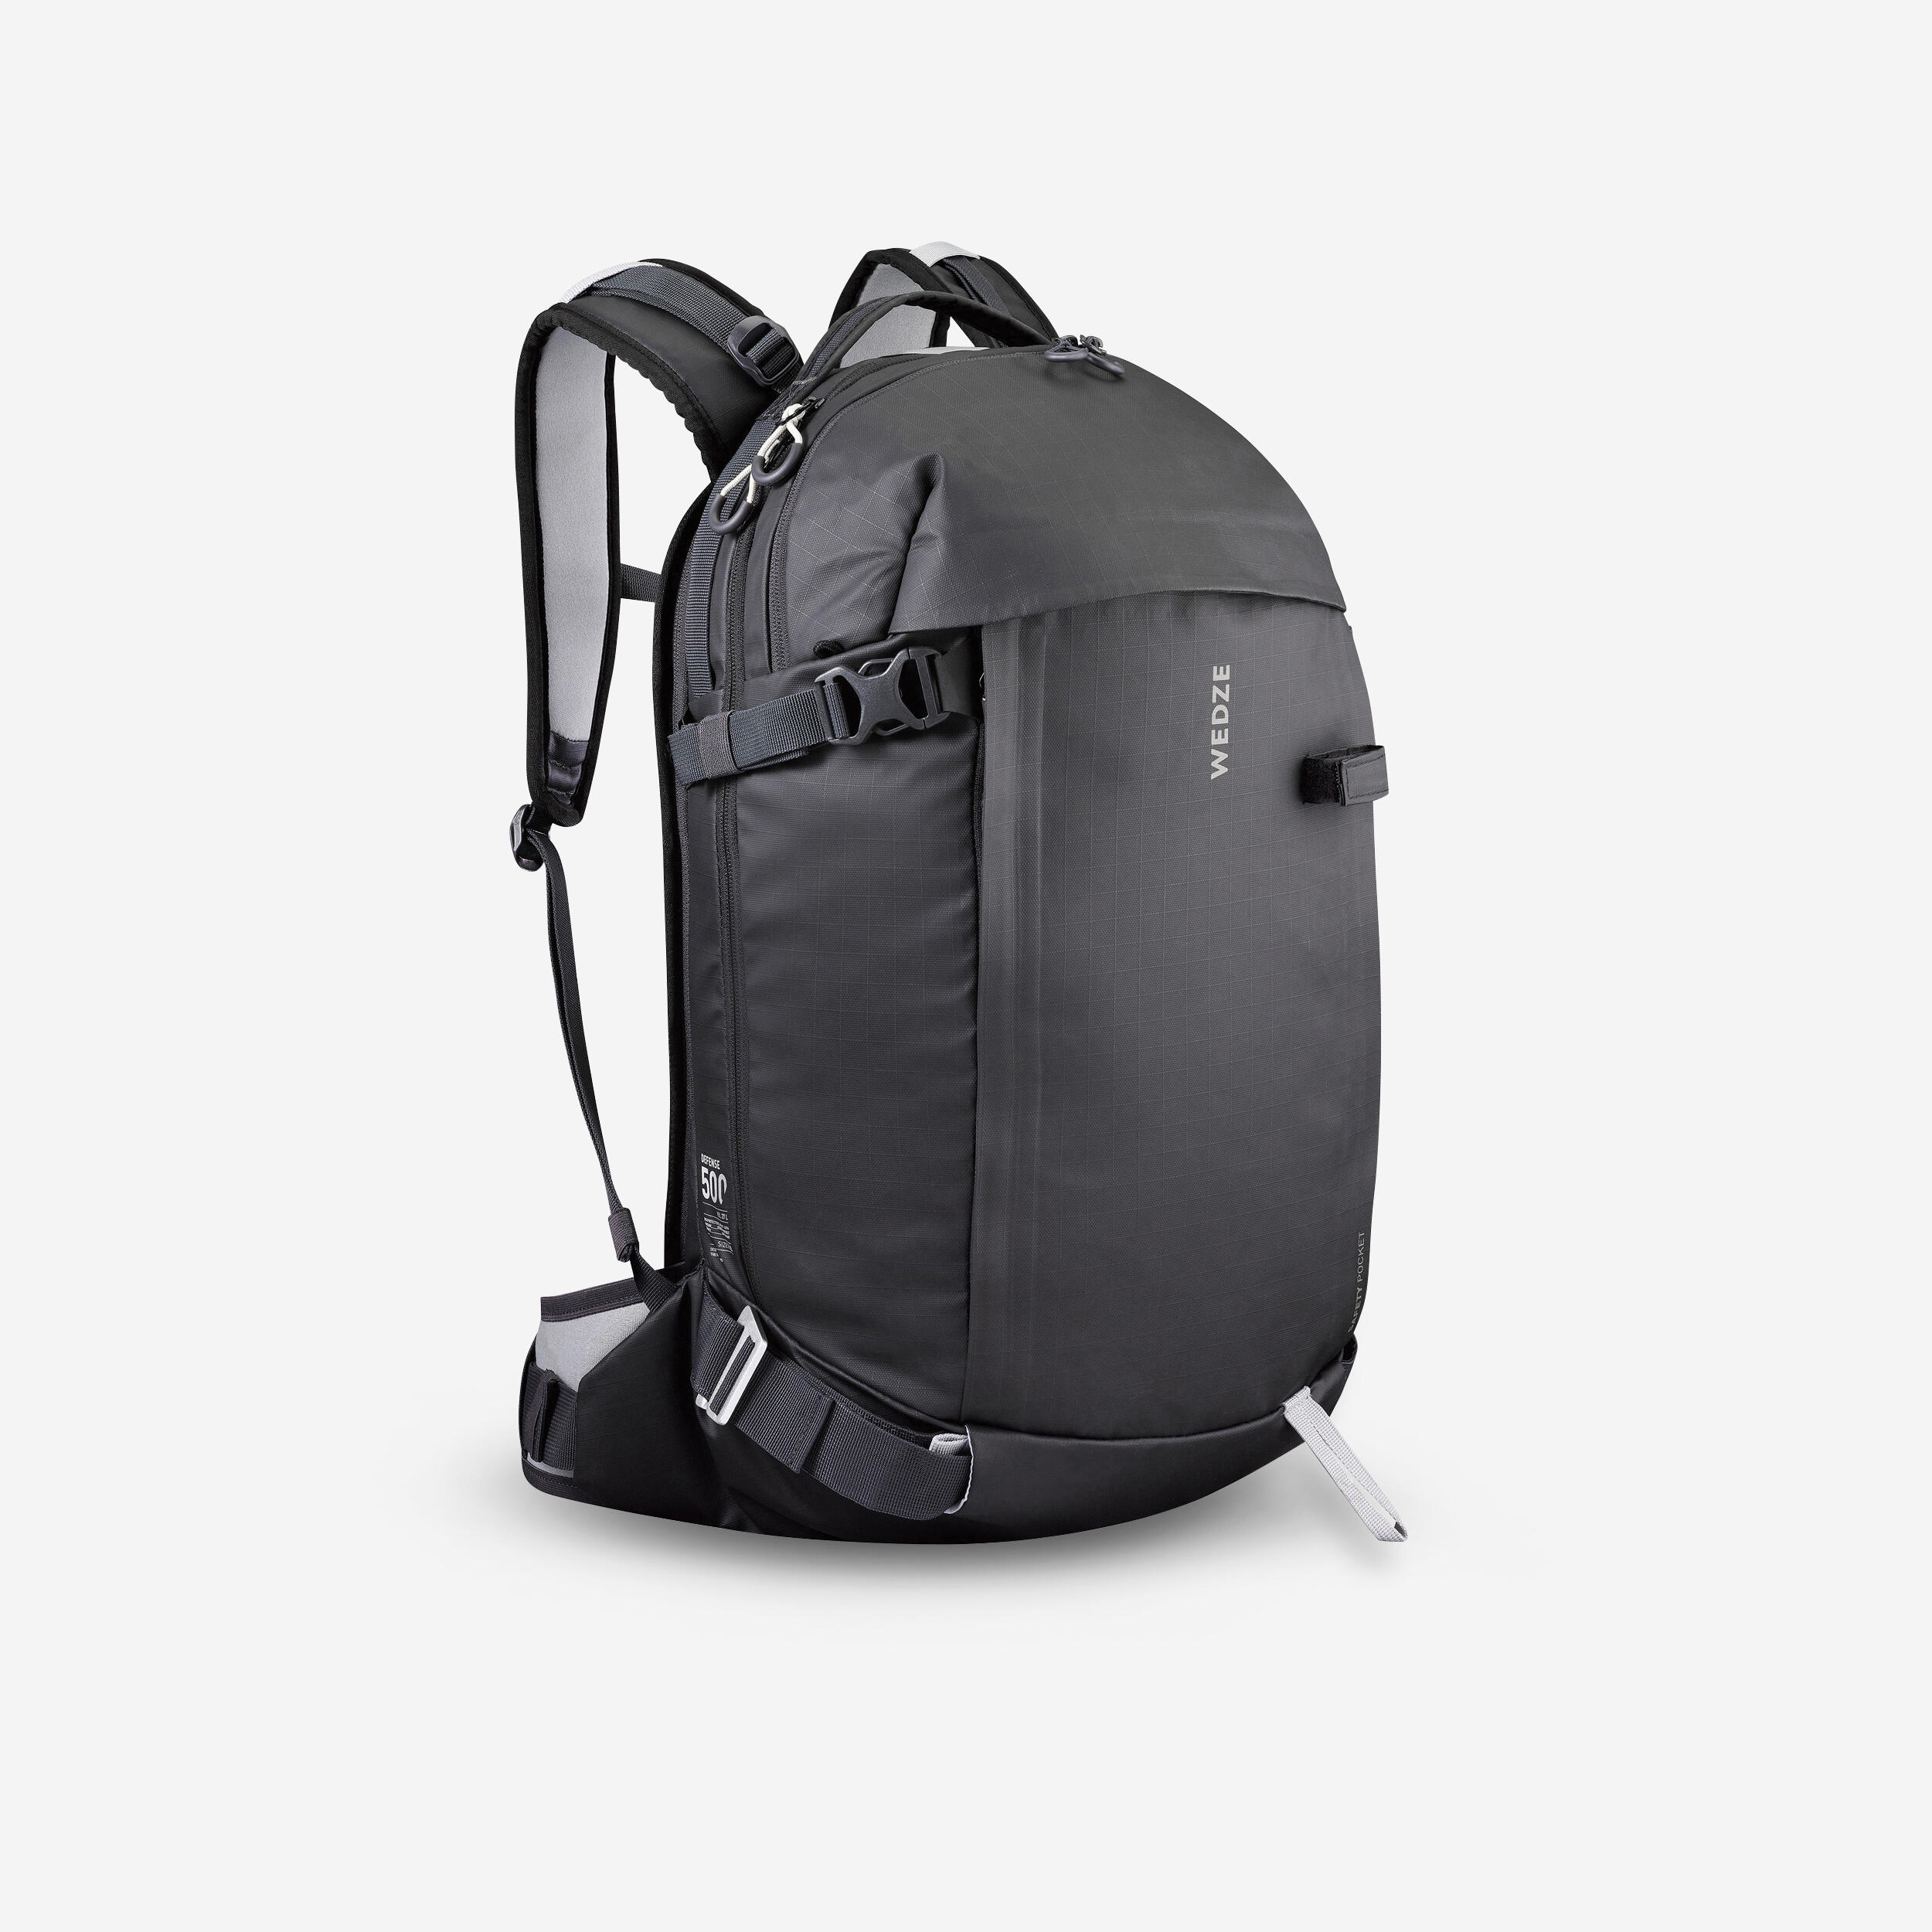 Freeride Ski Back Protector Backpack - FR 500 - WEDZE